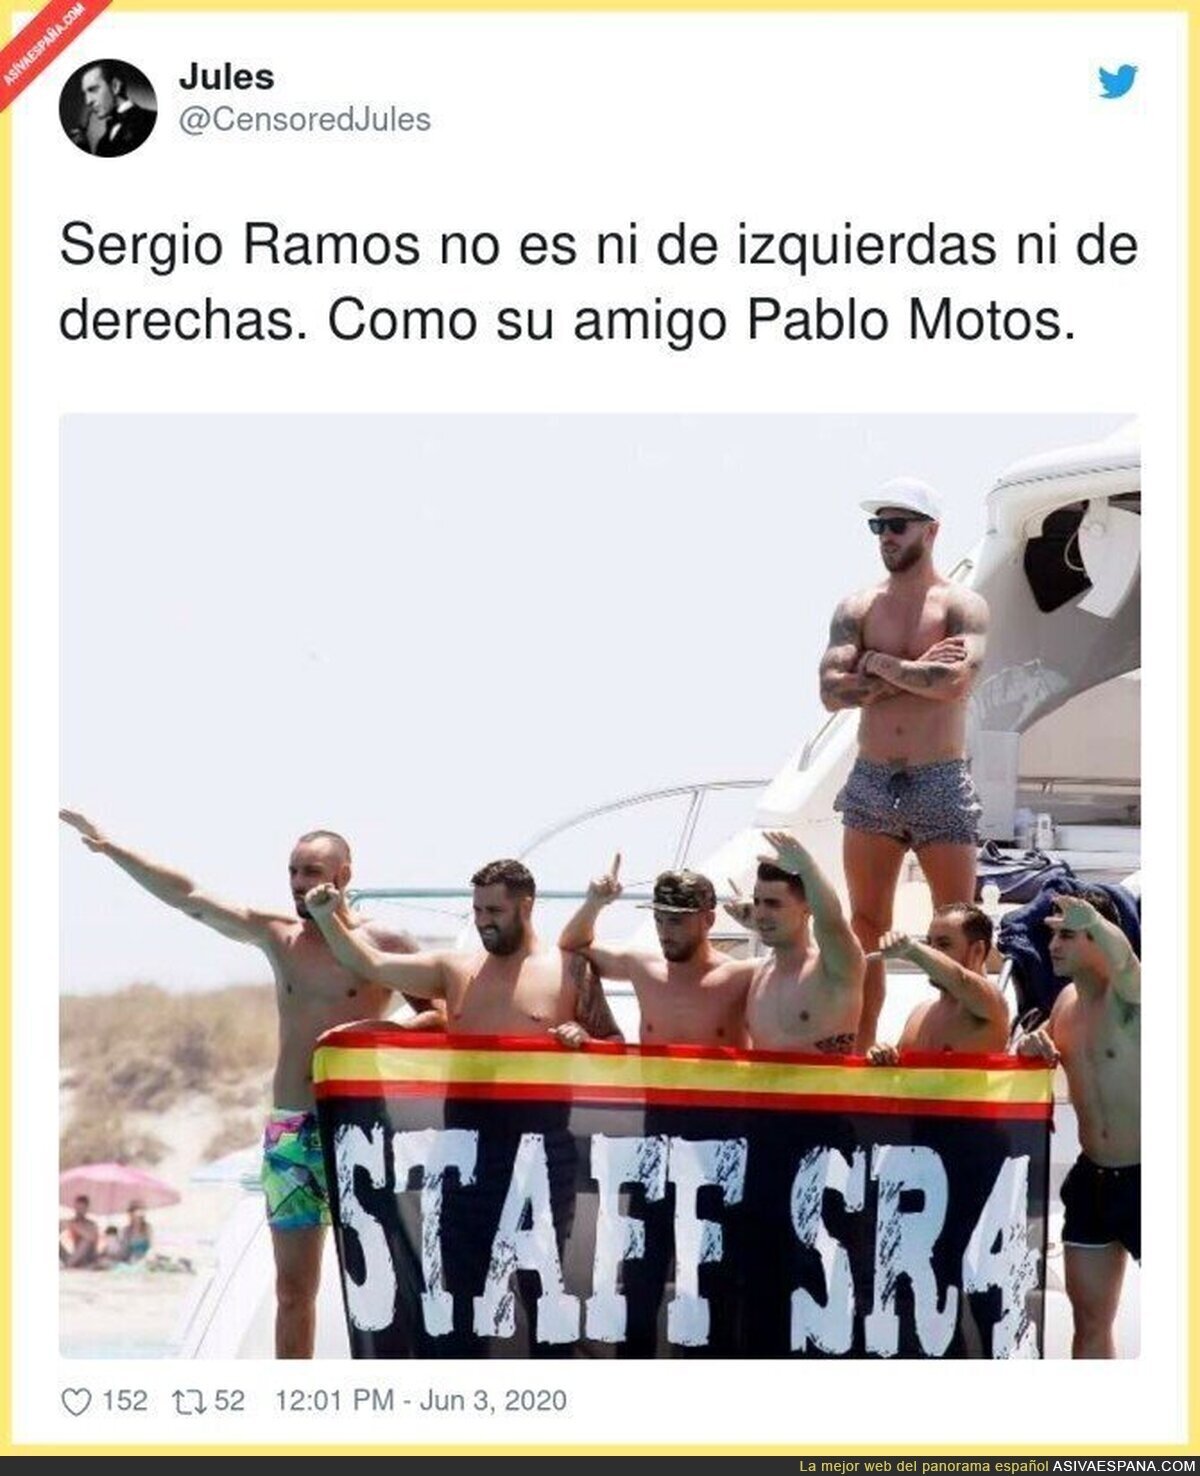 La ideología de Sergio Ramos más clara que nunca